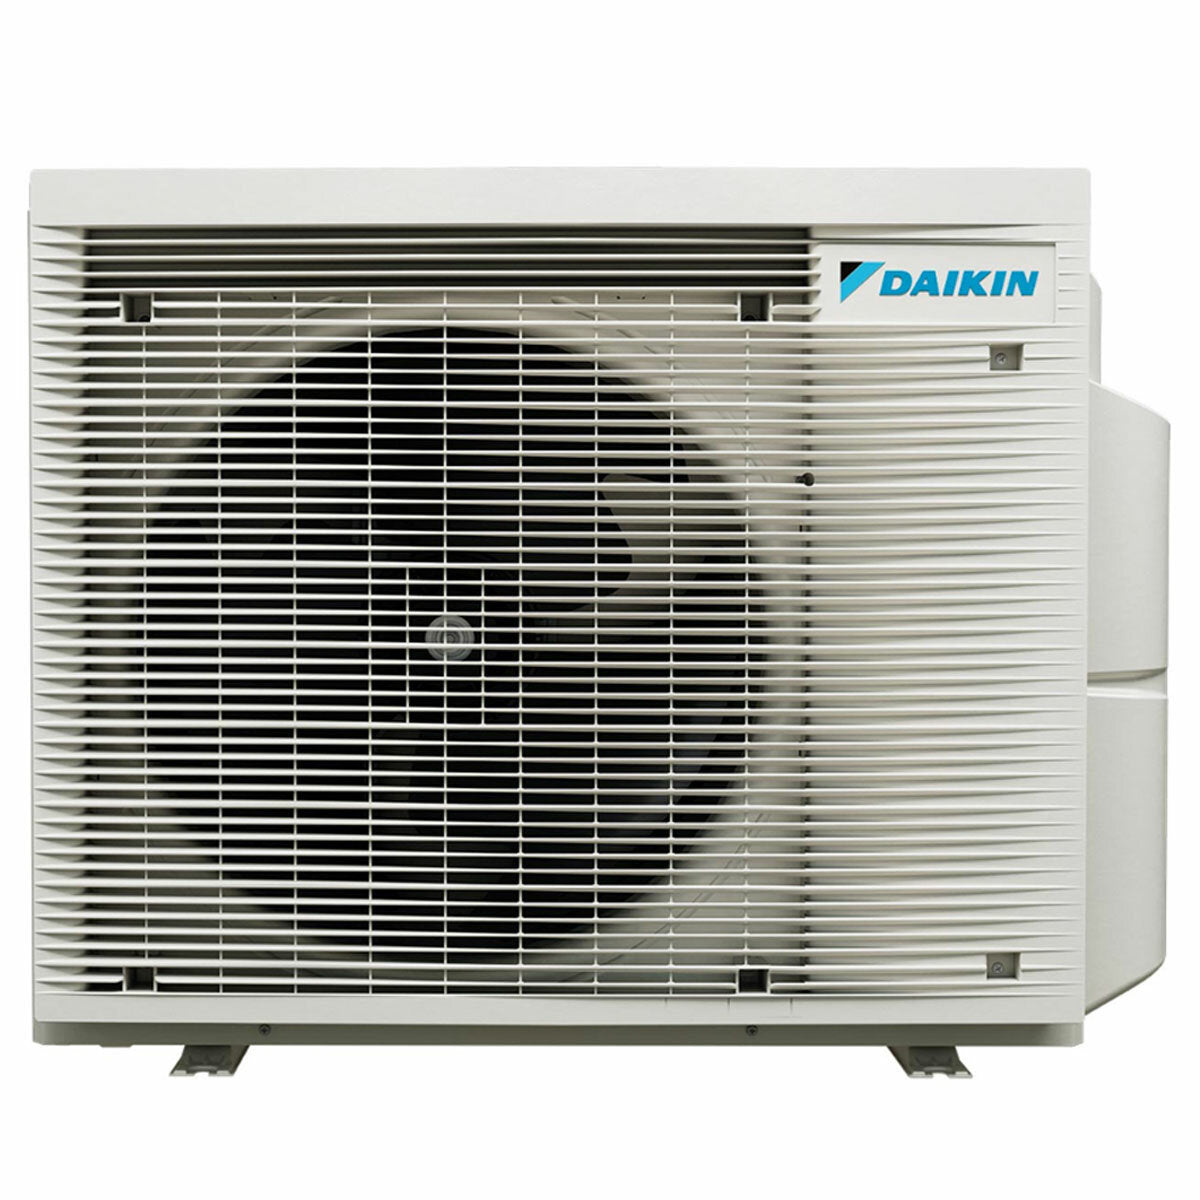 Daikin Stylish White Trial Split-Klimaanlage 7000+9000+15000 BTU Inverter A++ WLAN-Außeneinheit 6,8 kW